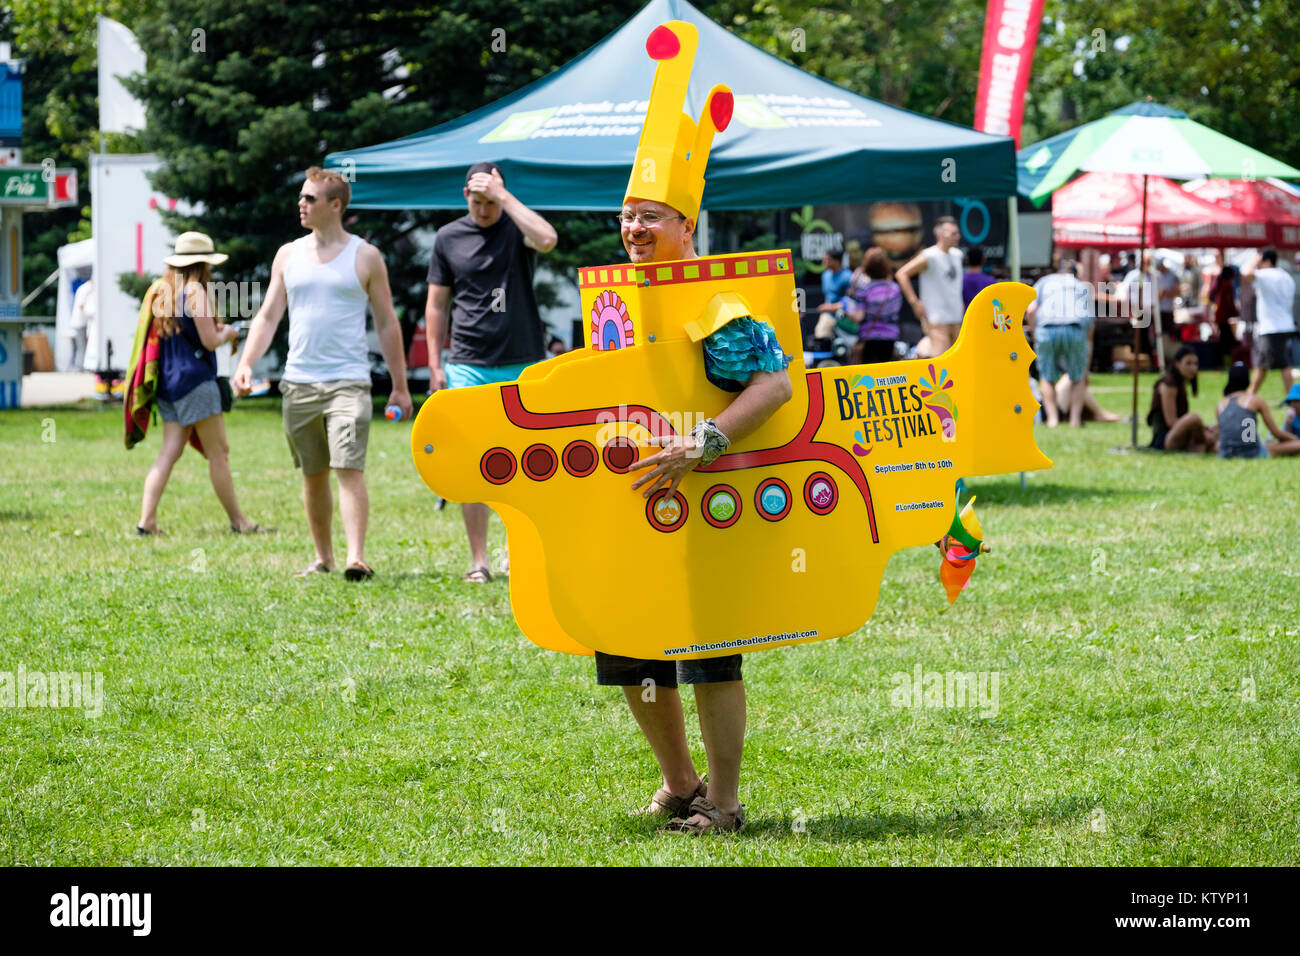 Mann verkleidet mit einem gelben U-Boot Kostüm, Prop, Förderung der London Beatles Festival, ein Sommerfest in London, Ontario, Kanada statt. Stockfoto